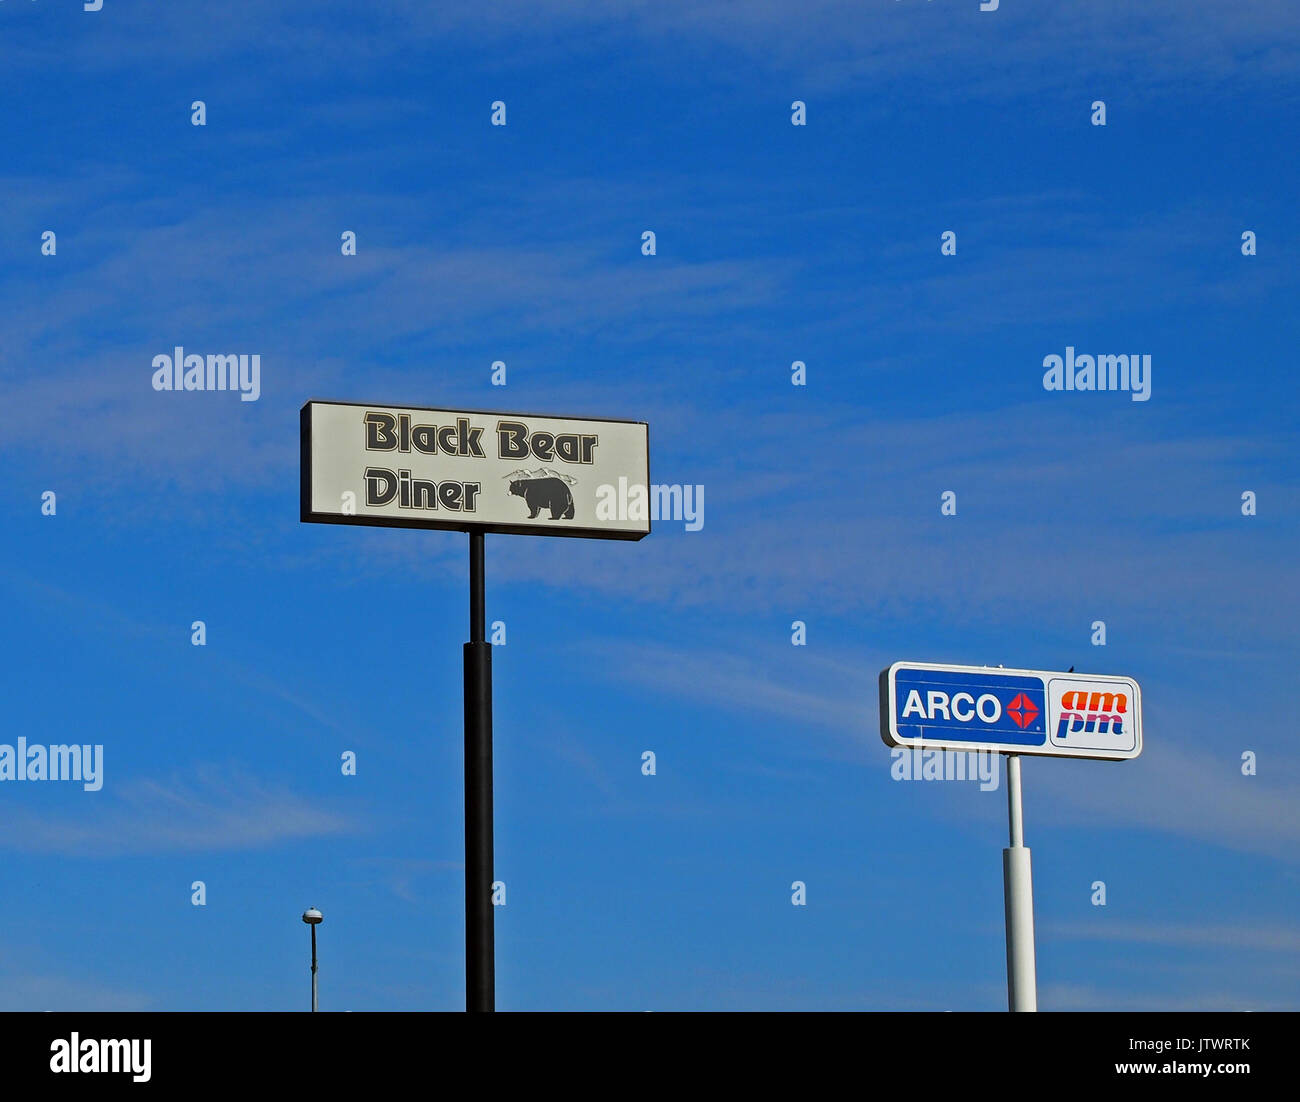 Black Bear Diner Restaurant und Arco Tankstelle und pm Markt Zeichen, Kalifornien Stockfoto